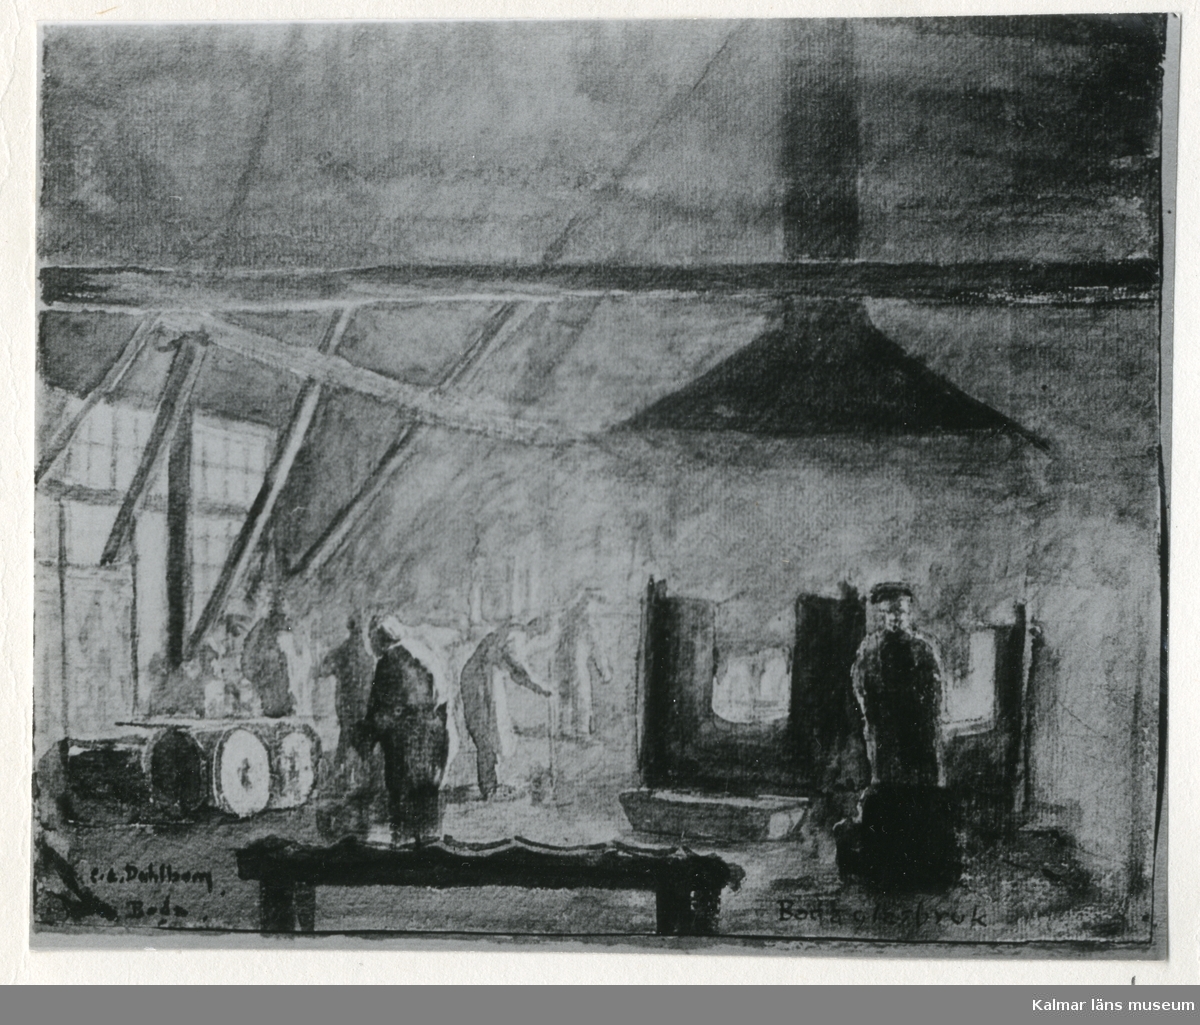 Interiör av den första hyttan i Boda. Foto efter målning av C.E. Dahlbom, 1866.